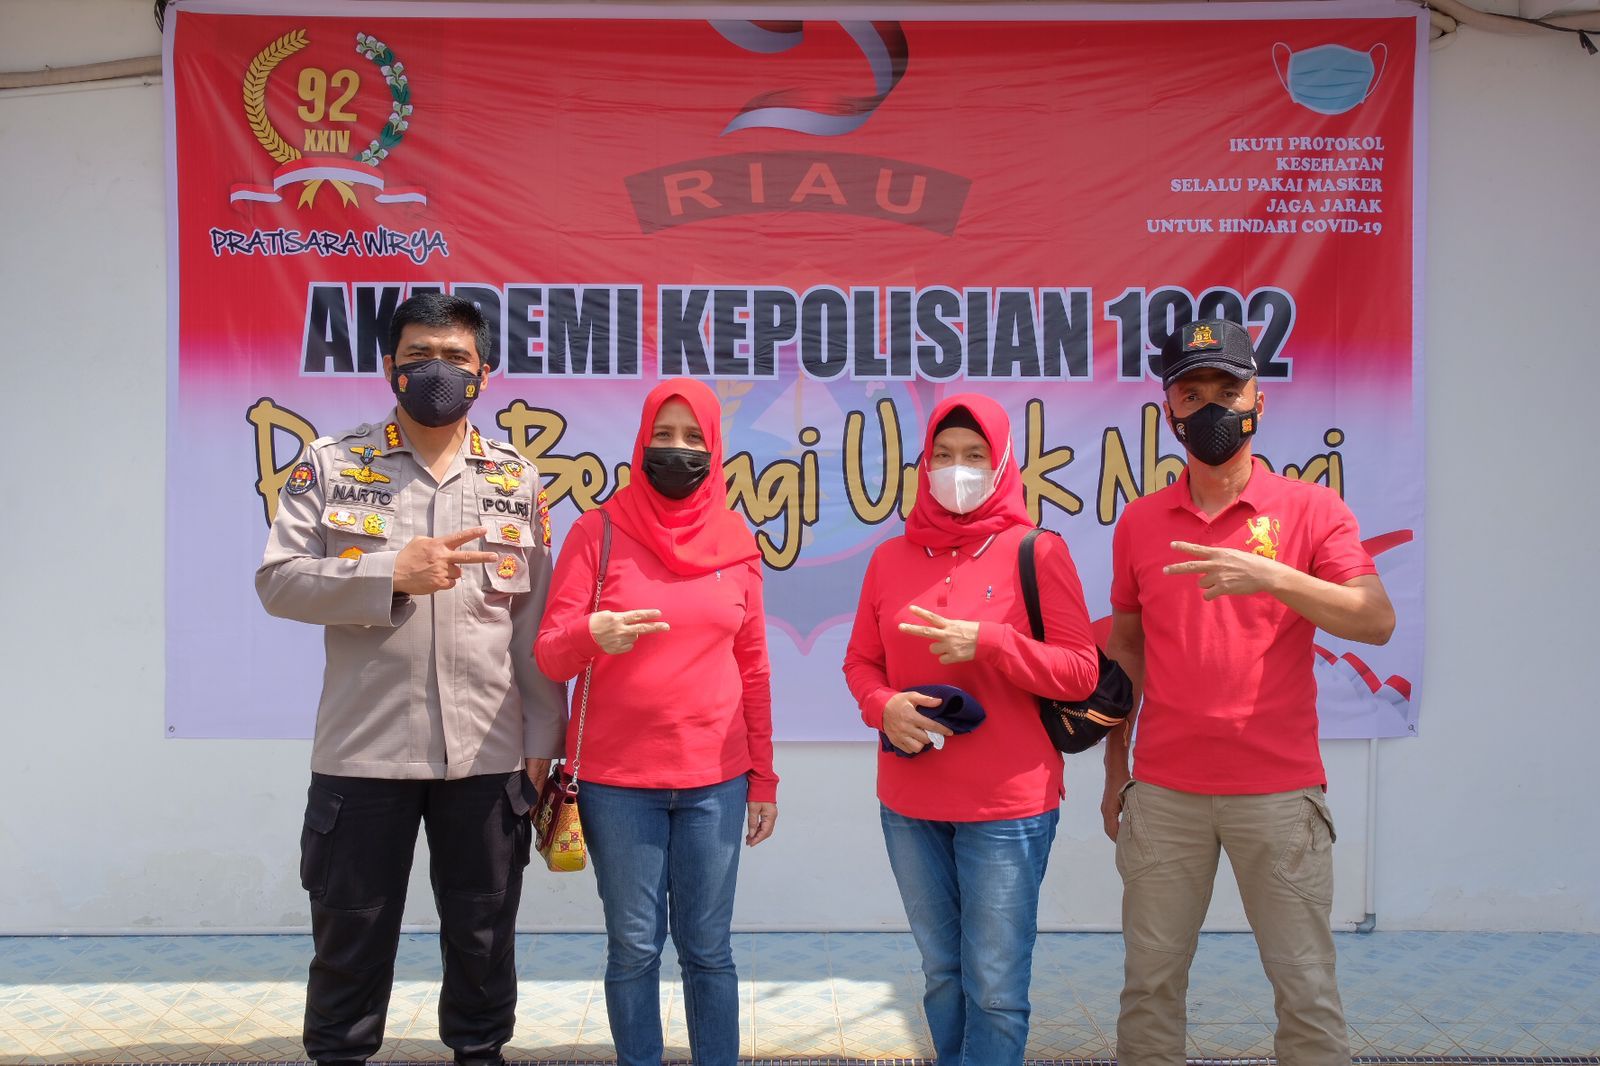 Alumni Akpol 1992 Riau Gelar Bansos “Berbagi Untuk Negeri”, Distribusikan 556 Paket Sembako